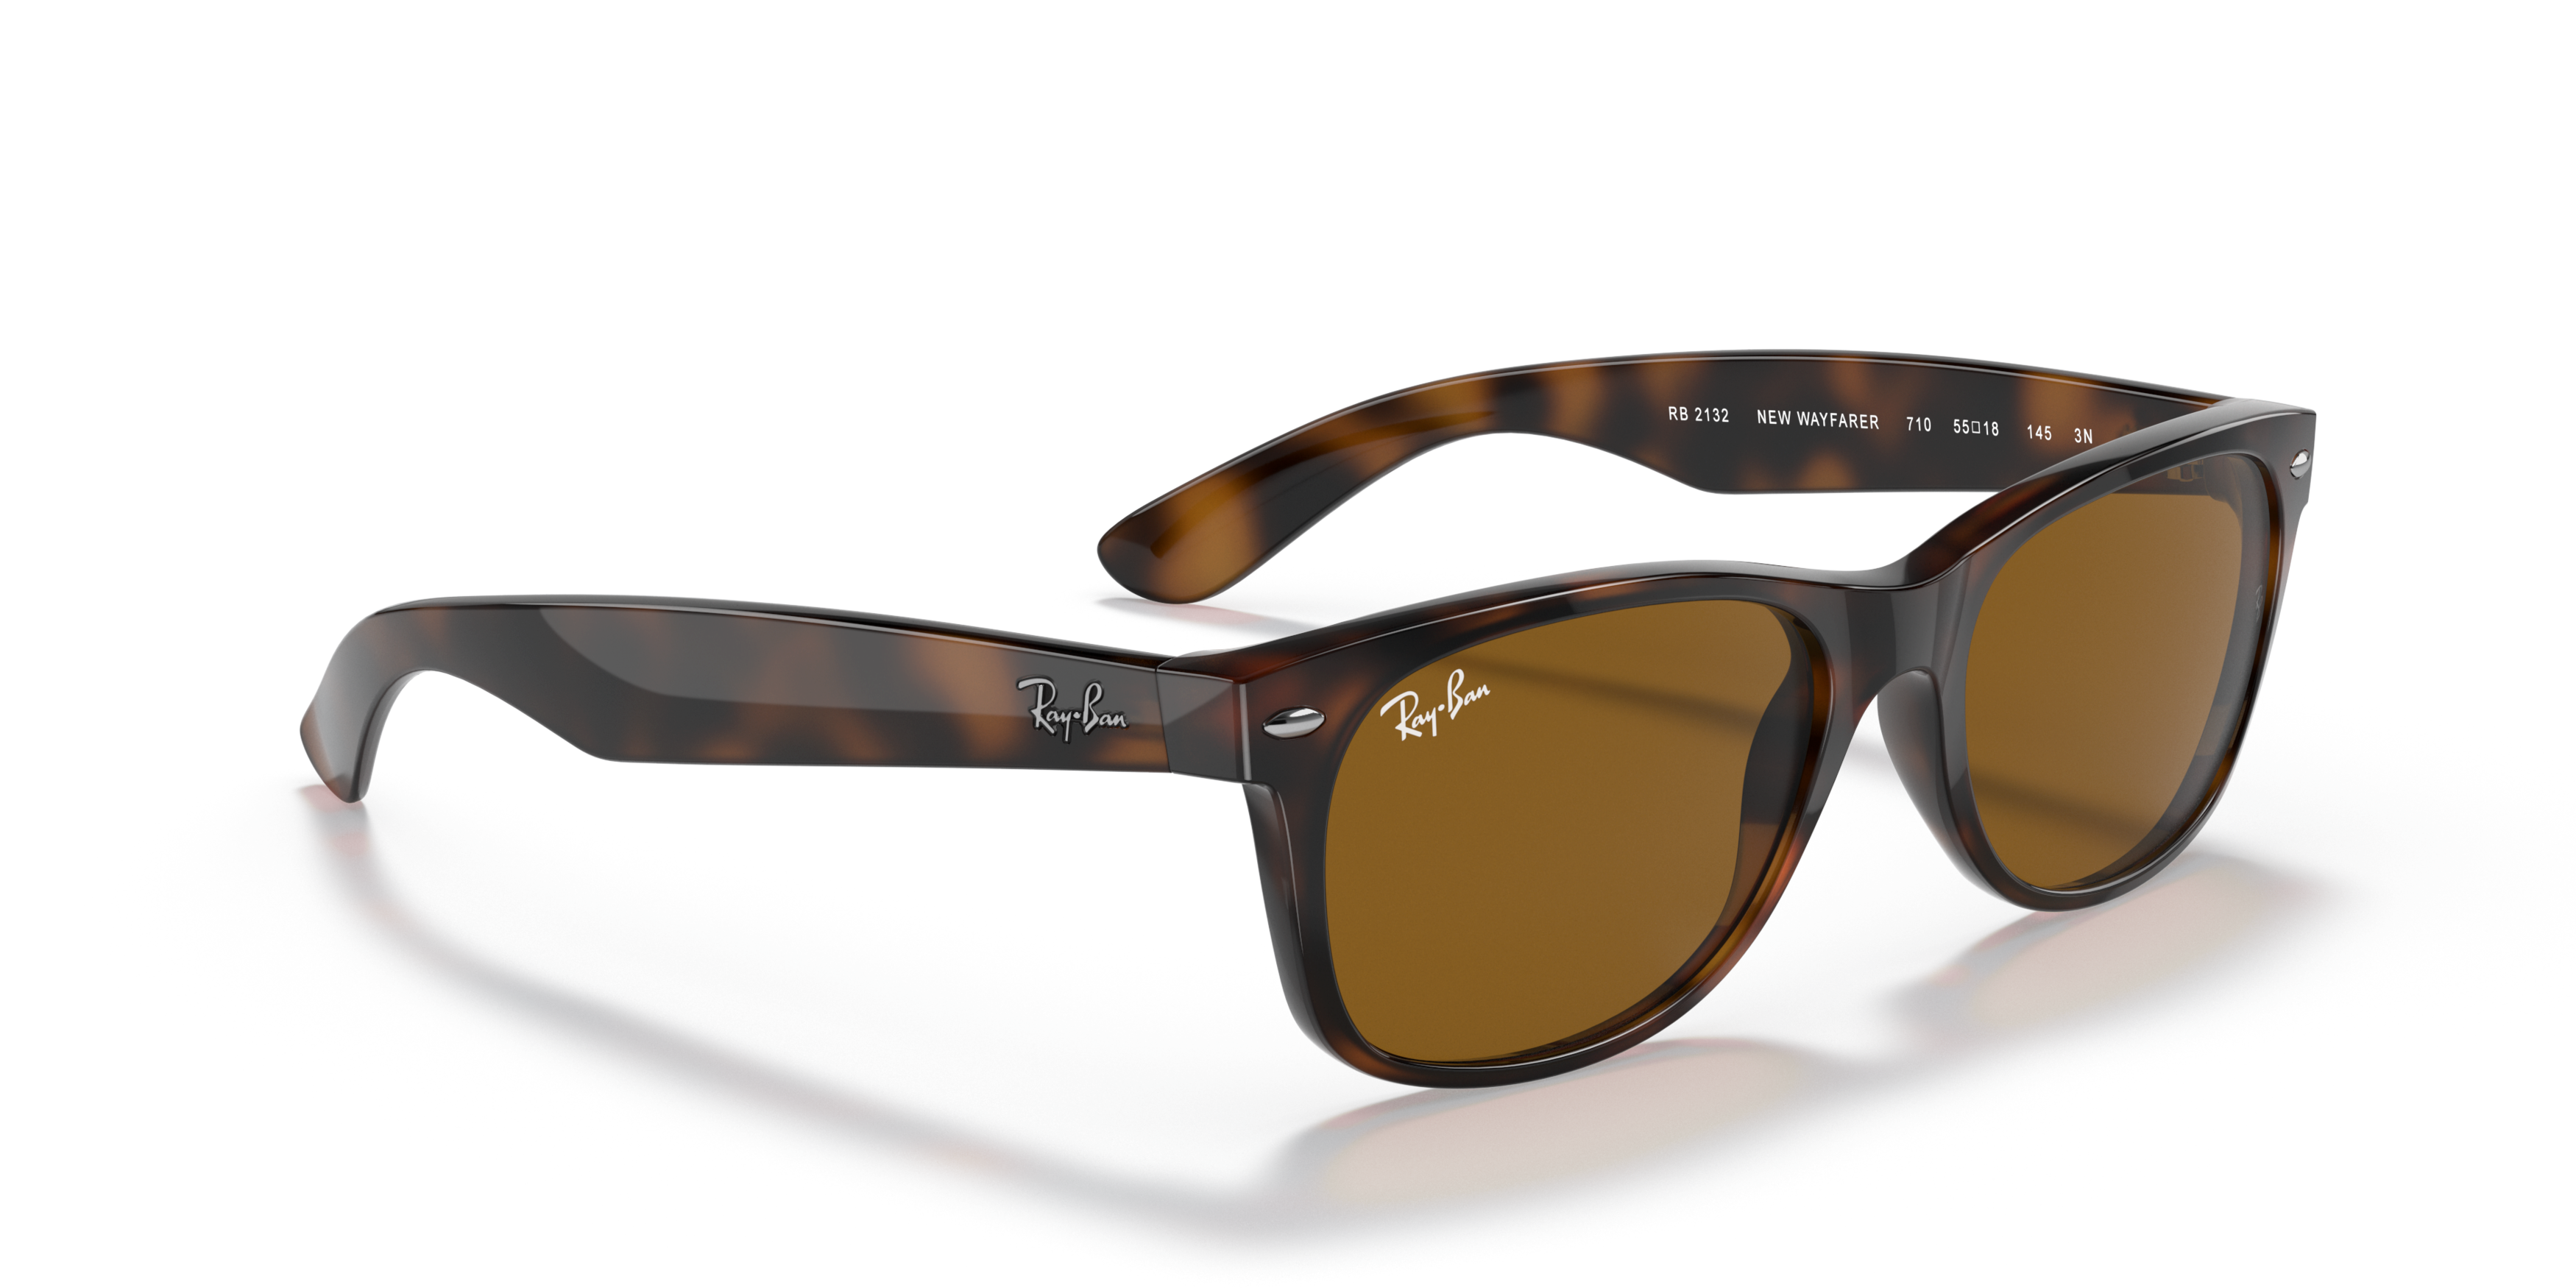 Ray Ban RB2132 New Wayfarer Sunglasses